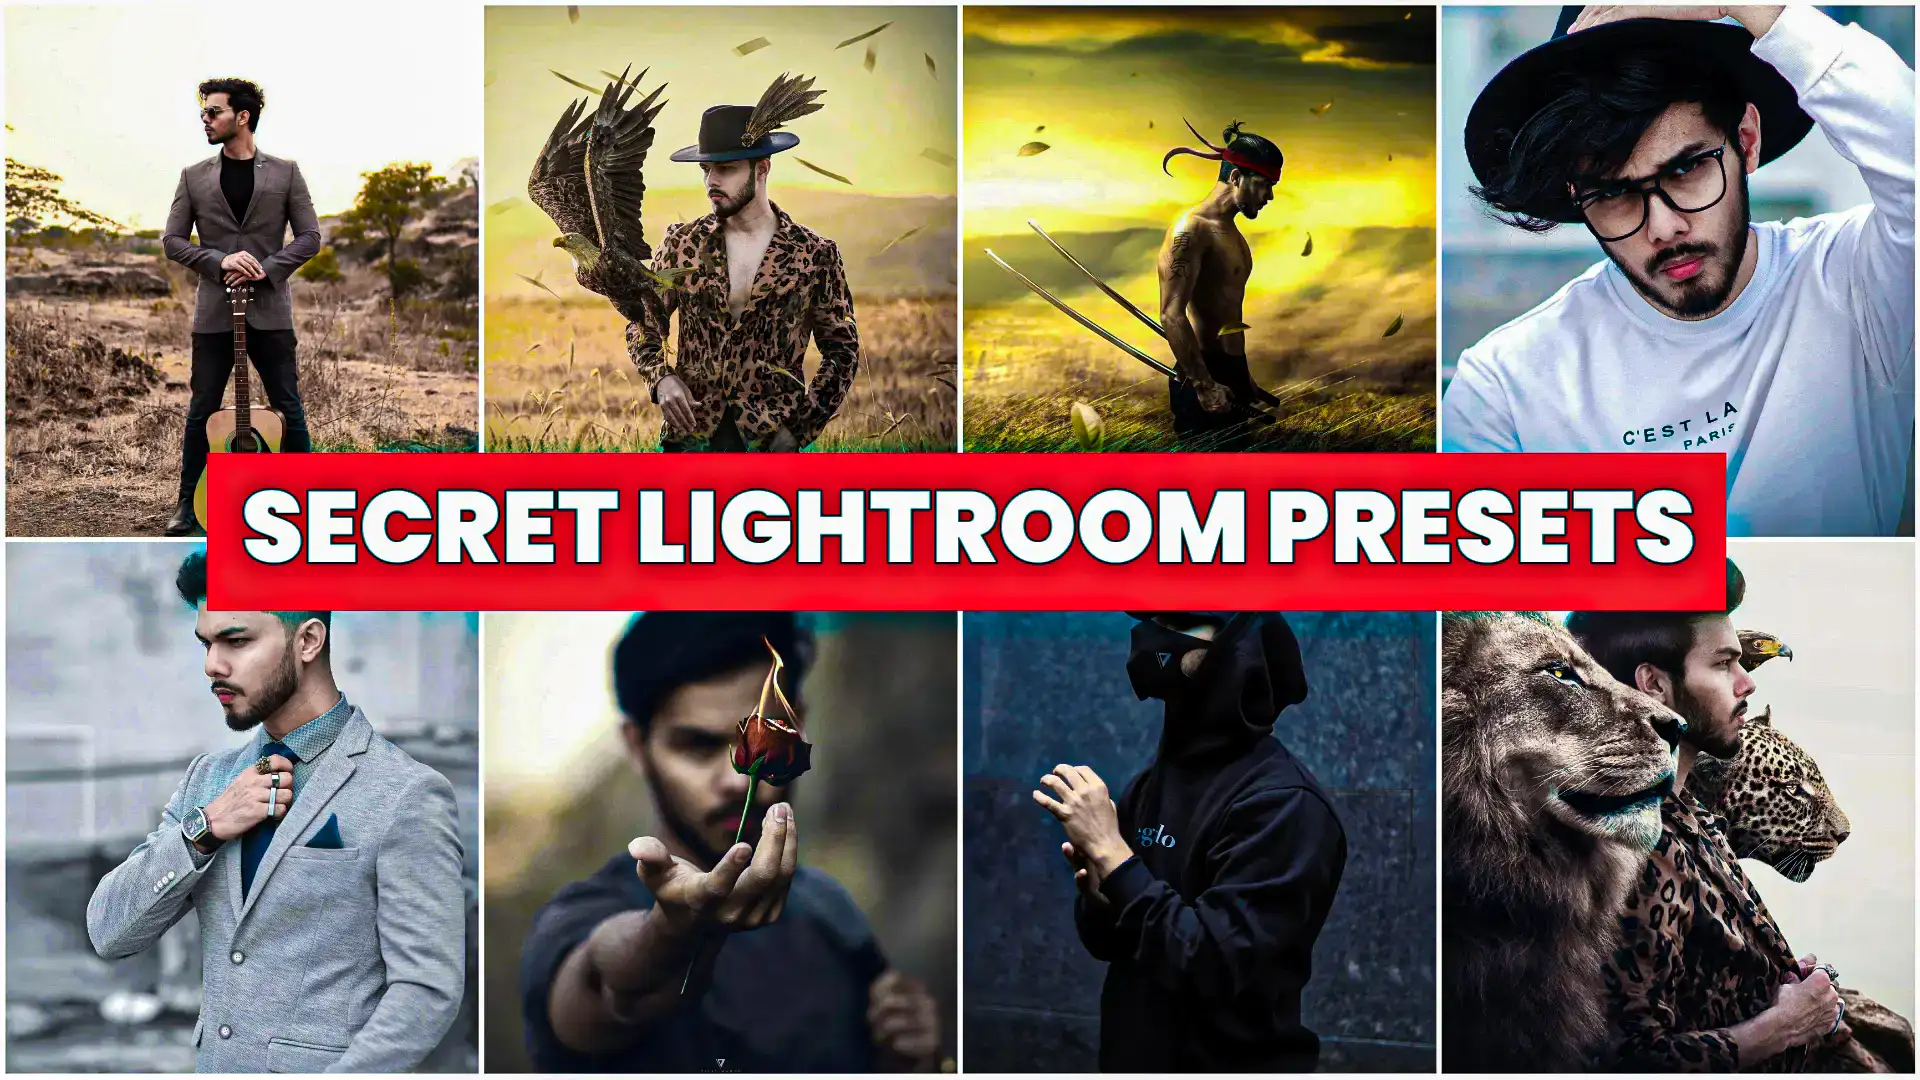 Vijay Mahar Lightroom Presets